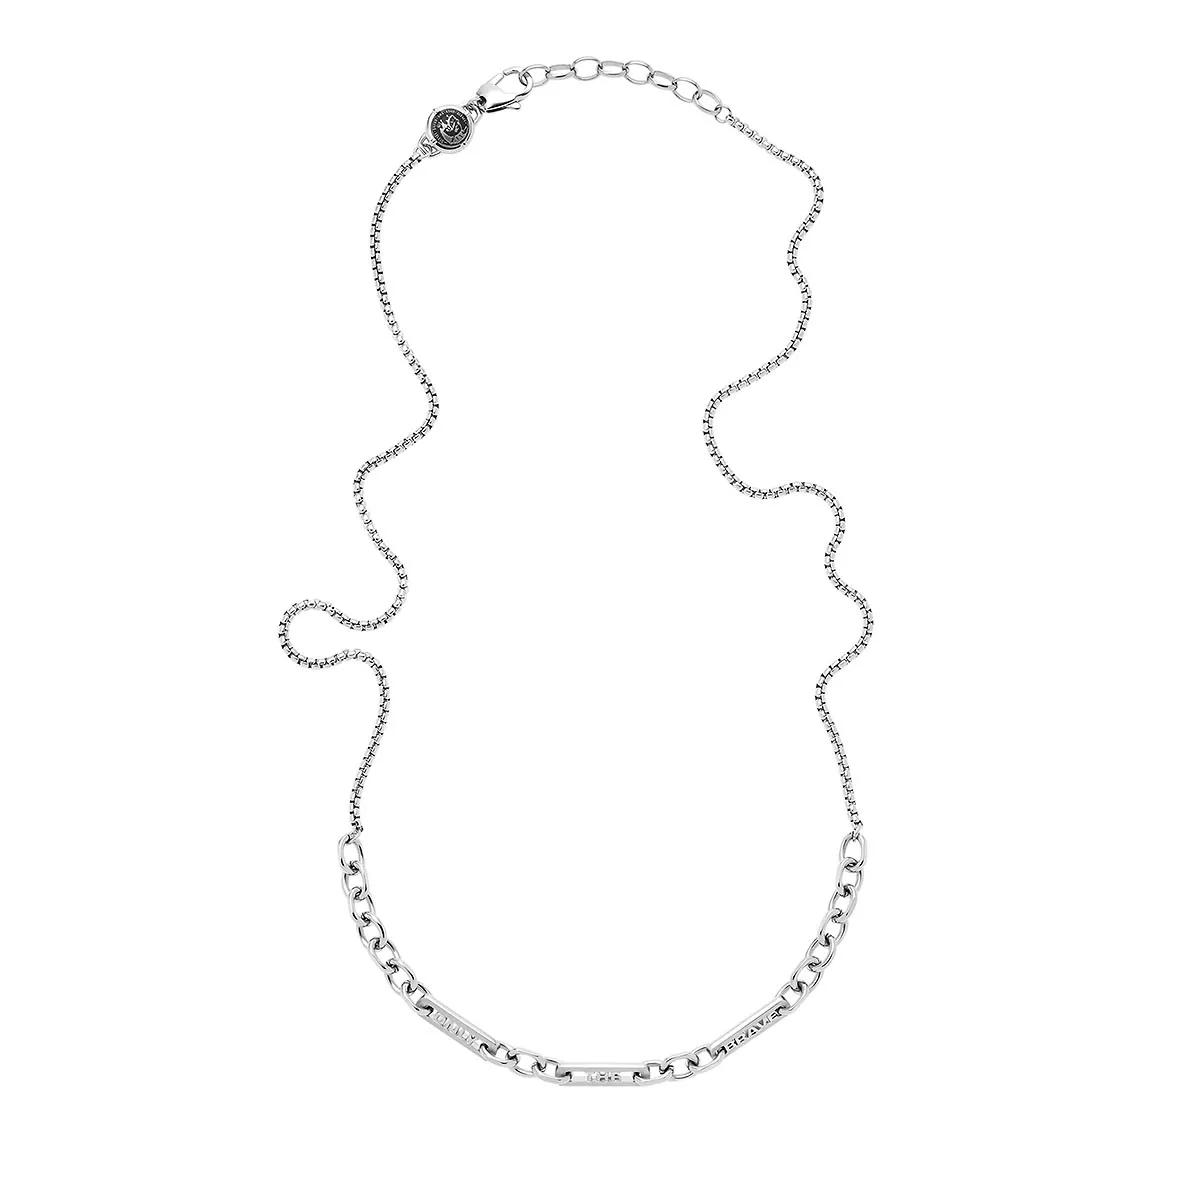 Sie können es sofort finden! Diesel Stainless Steel Chain Mittellange Necklace | Halskette Silver